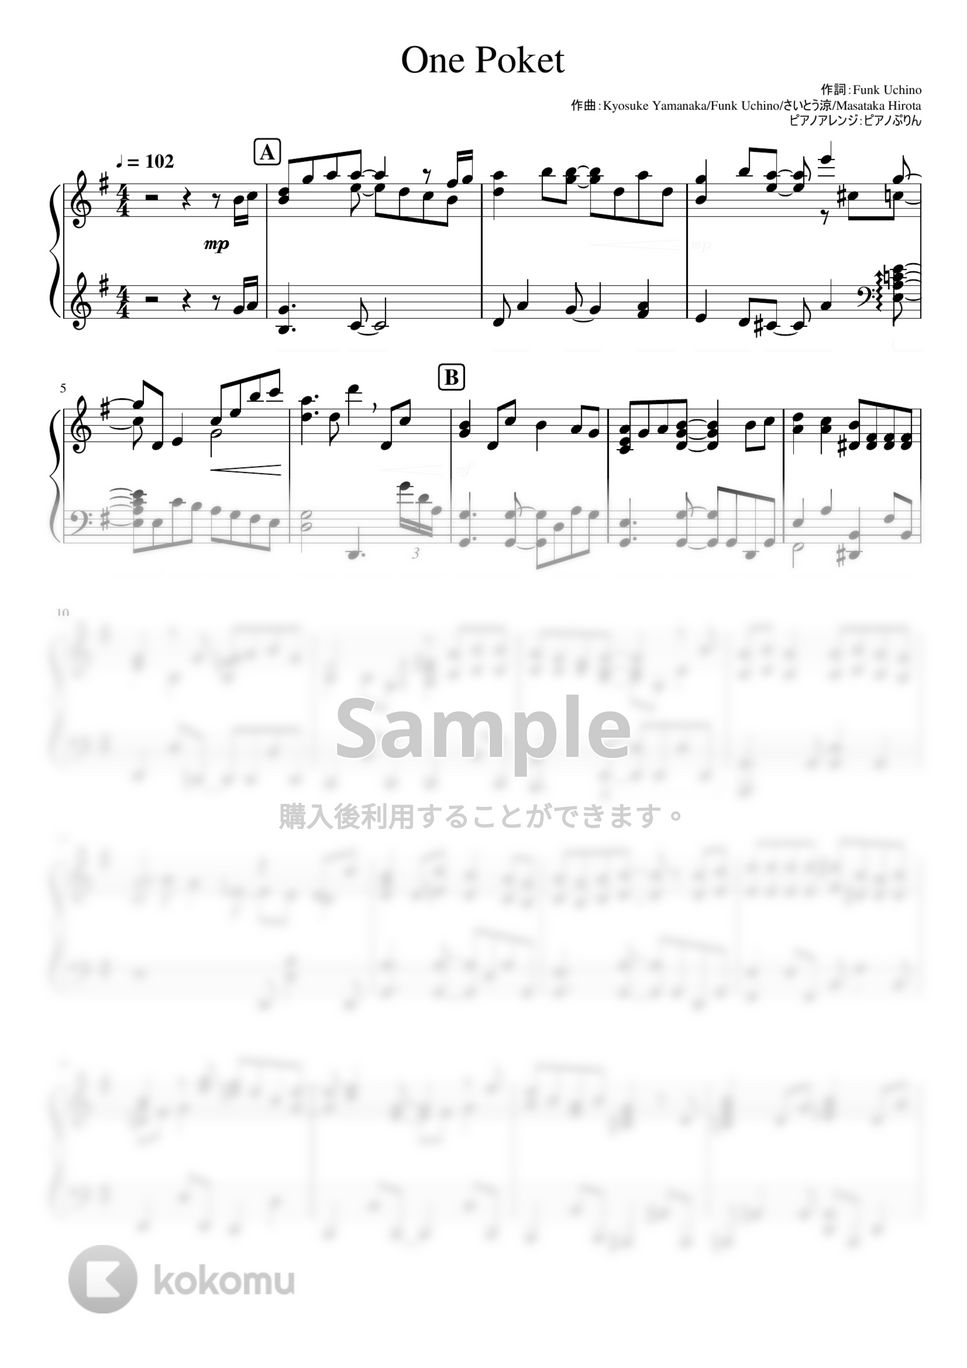 なにわ男子 - One Pocket (なにわ男子/3rd single『ハッピーサプライズ』カップリング曲) by ピアノぷりん